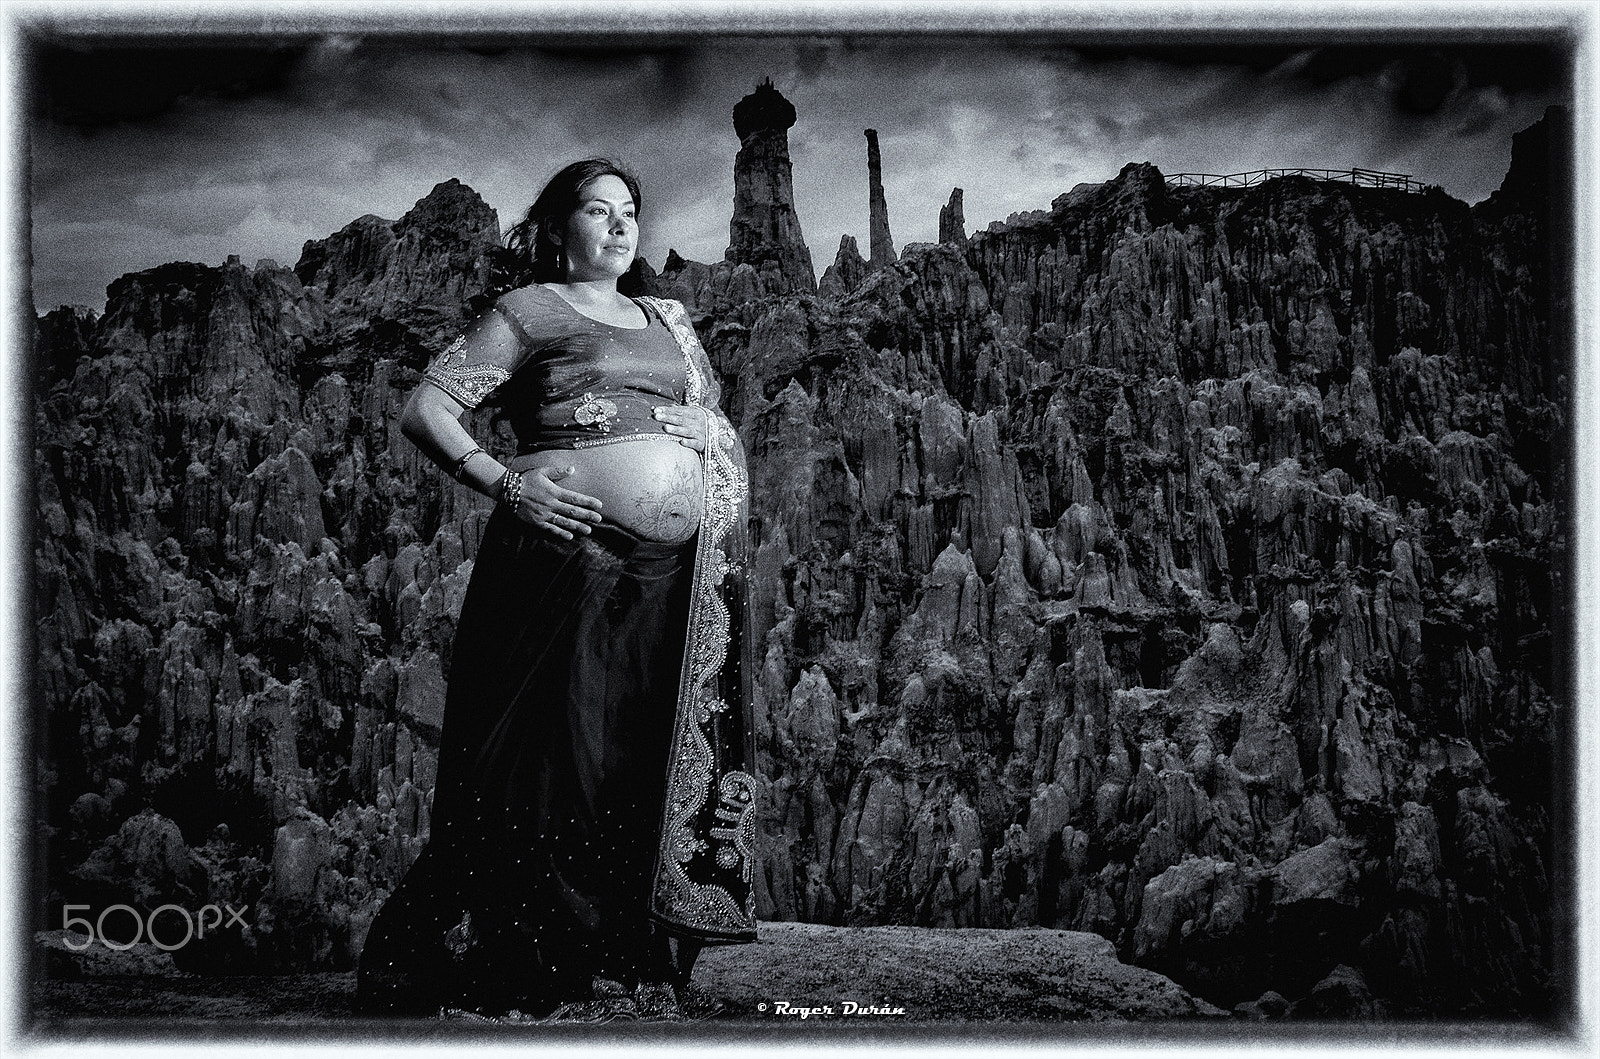 AF Nikkor 24mm f/2.8 sample photo. Mariel pregnant photography